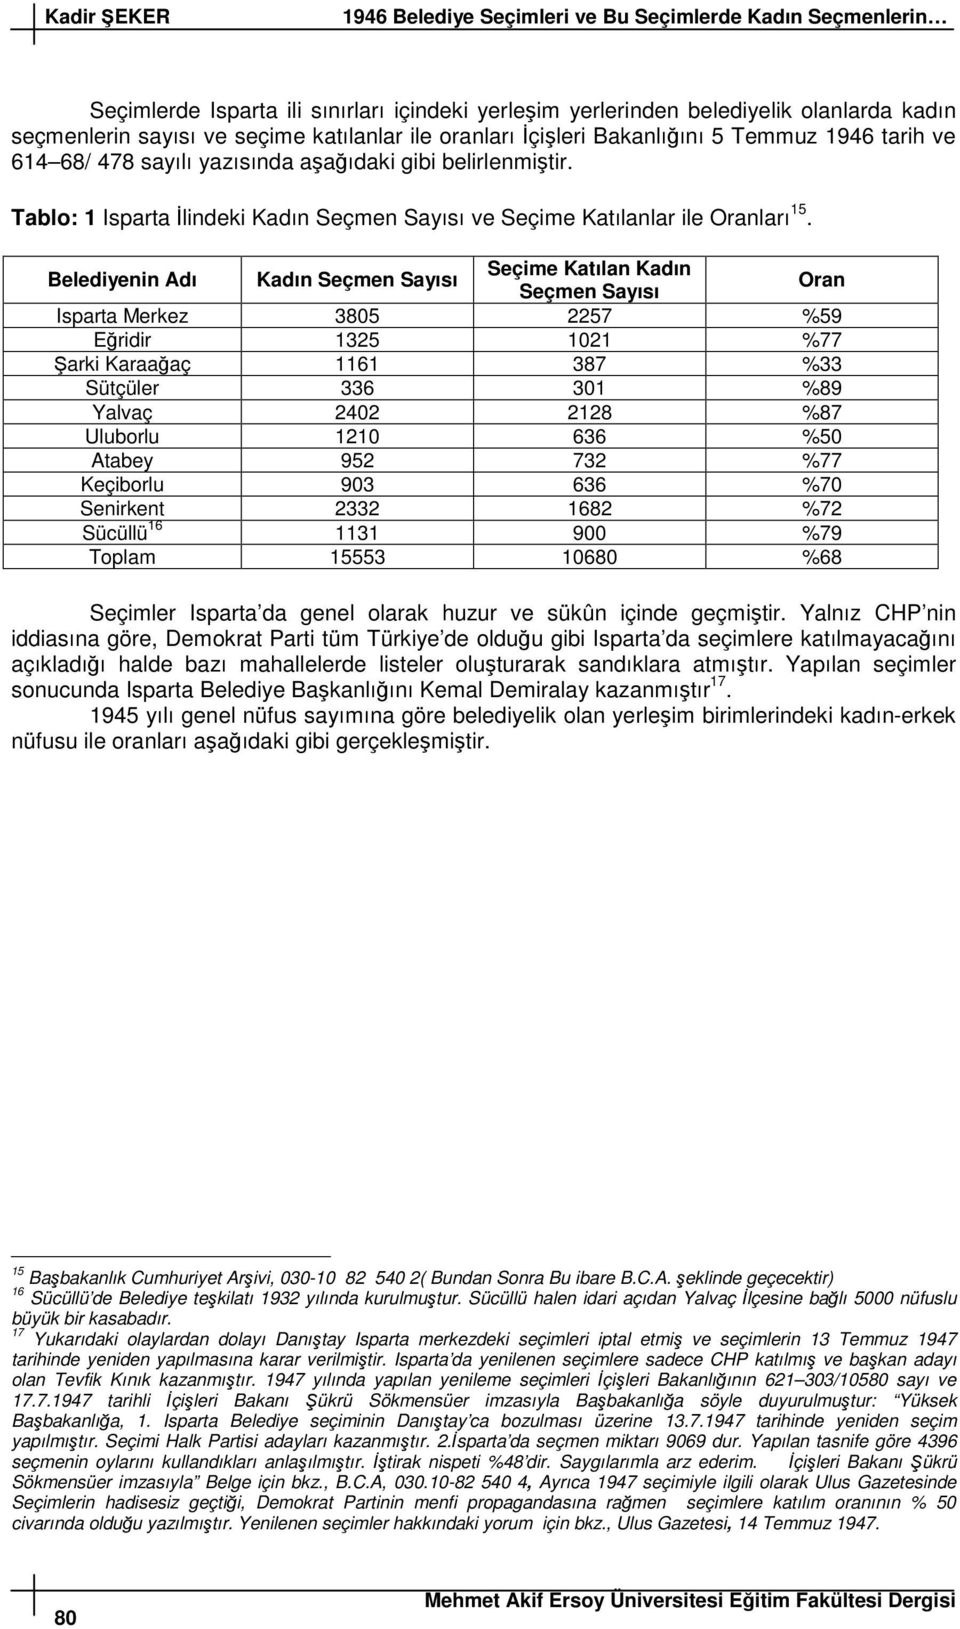 Belediyenin Adı Kadın Seçmen Sayısı Seçime Katılan Kadın Seçmen Sayısı Oran Isparta Merkez 3805 2257 %59 Eridir 1325 1021 %77 arki Karaaaç 1161 387 %33 Sütçüler 336 301 %89 Yalvaç 2402 2128 %87